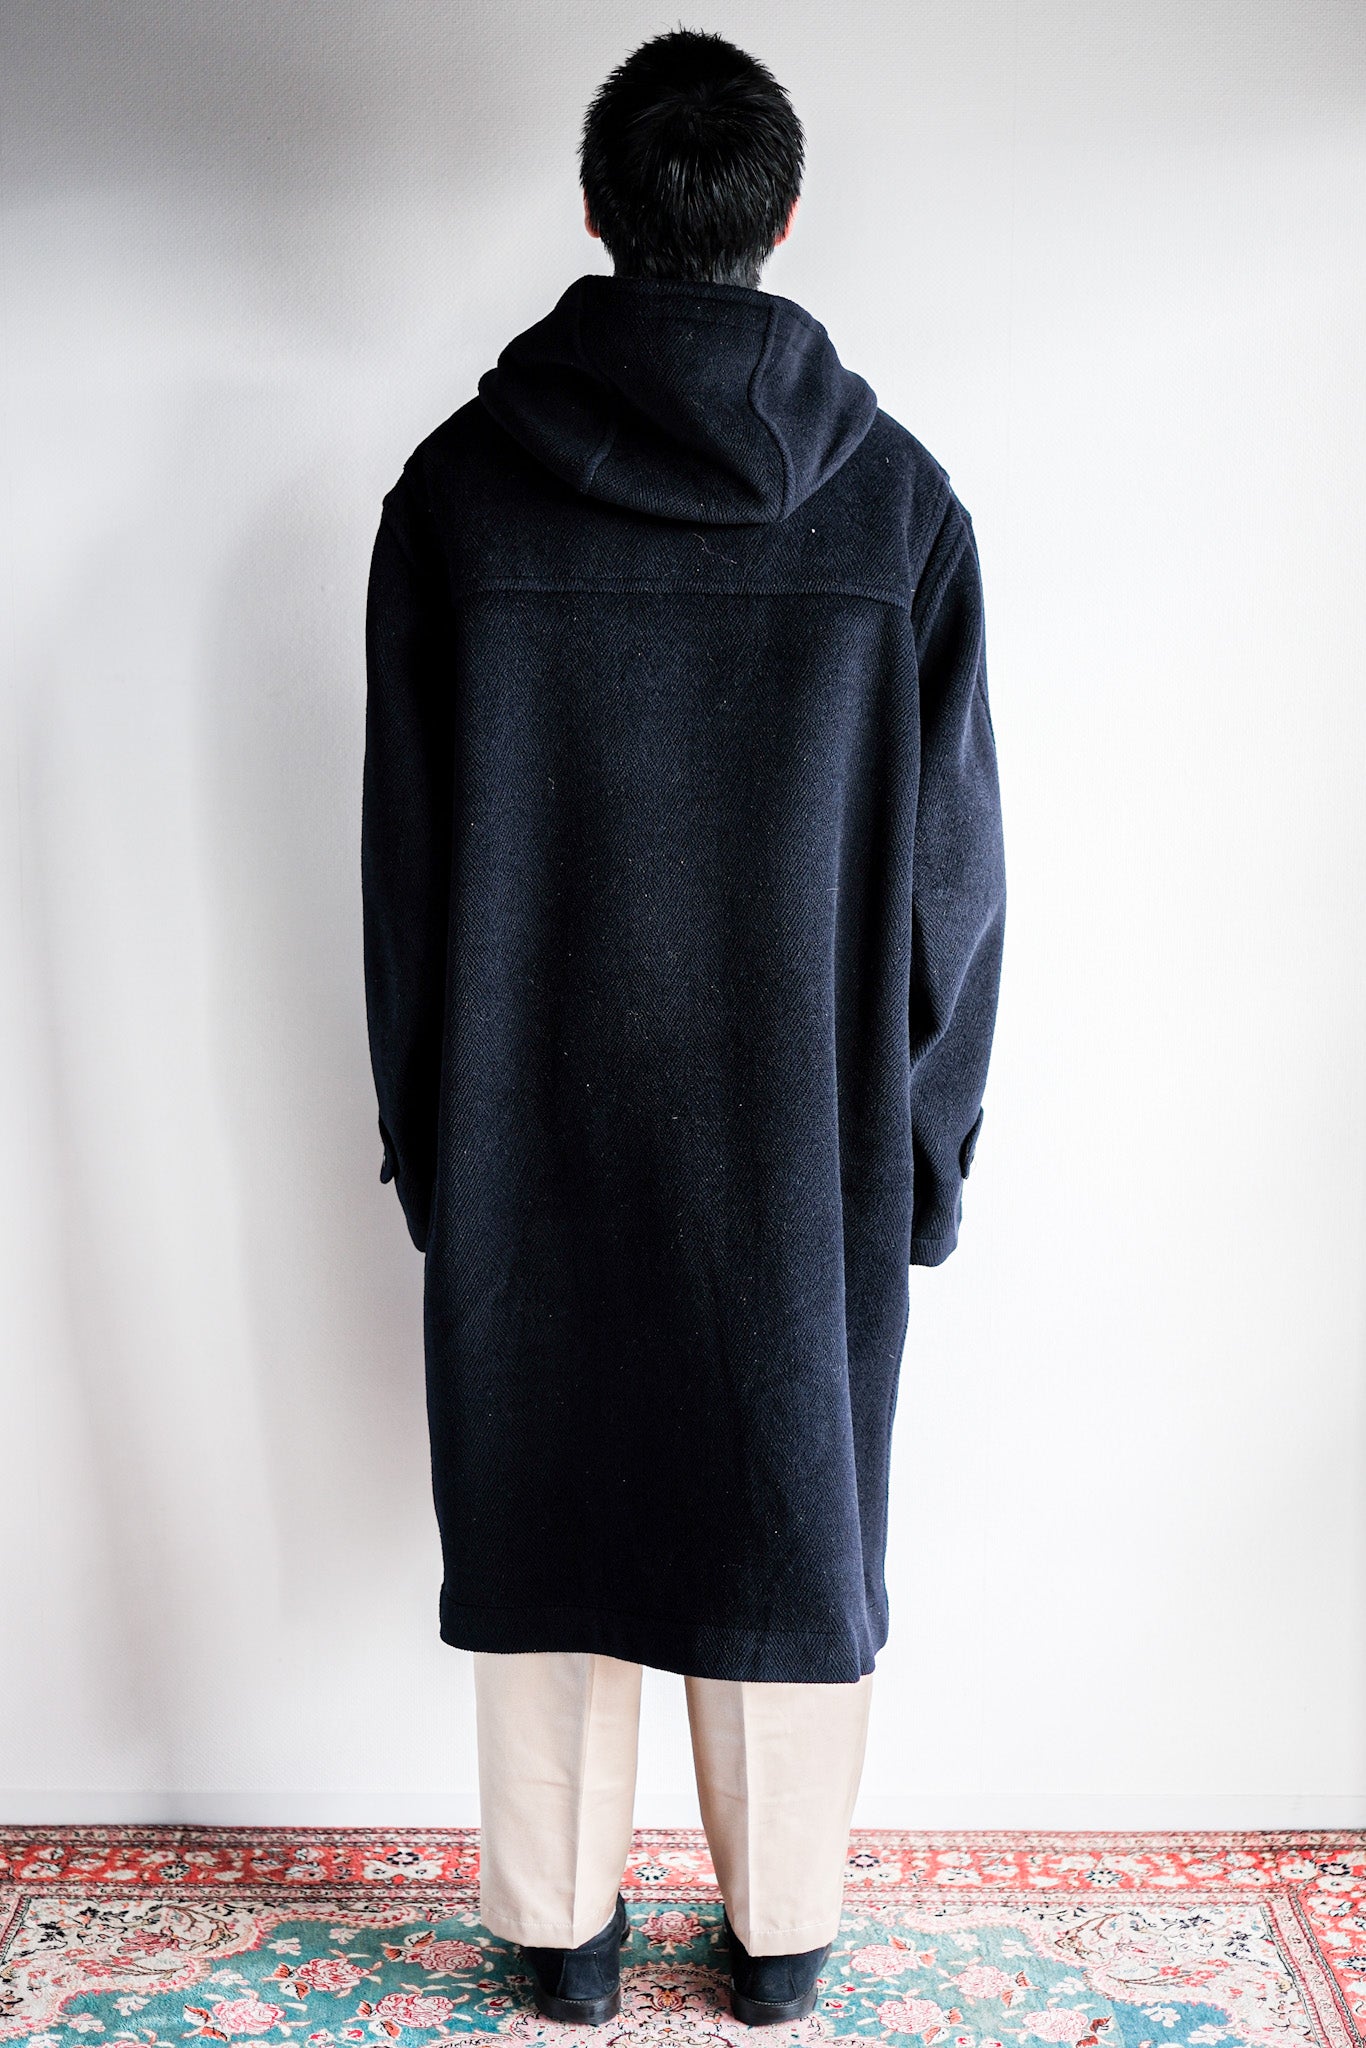 [〜80年代]復古grenfell羊毛行李外套的尺寸。44“ Moorbrook”